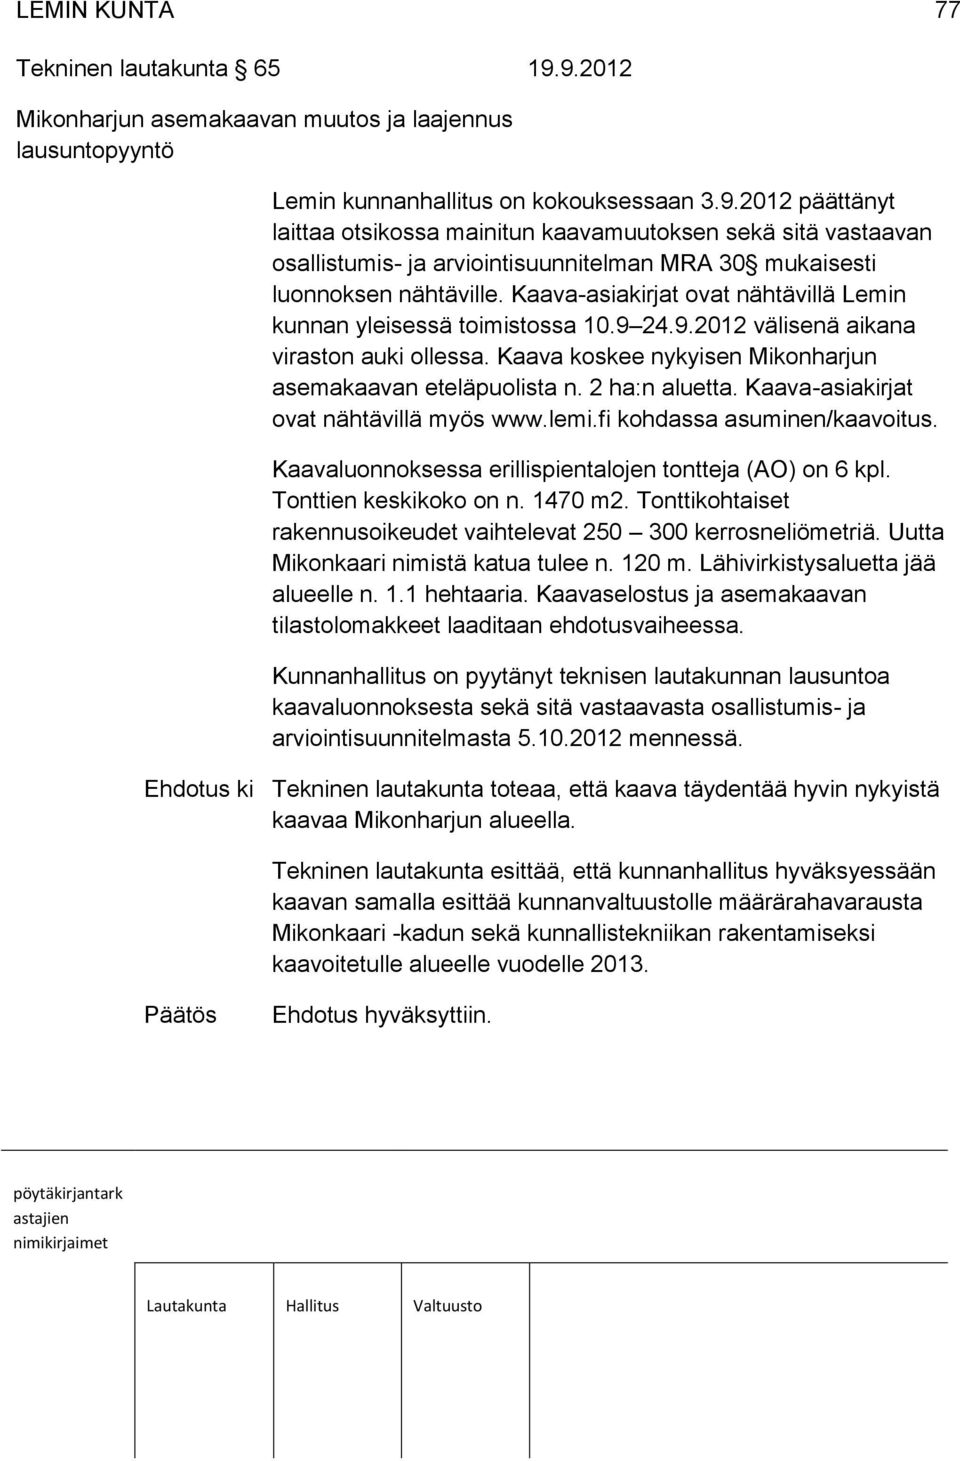 Kaava-asiakirjat ovat nähtävillä myös www.lemi.fi kohdassa asuminen/kaavoitus. Kaavaluonnoksessa erillispientalojen tontteja (AO) on 6 kpl. Tonttien keskikoko on n. 1470 m2.